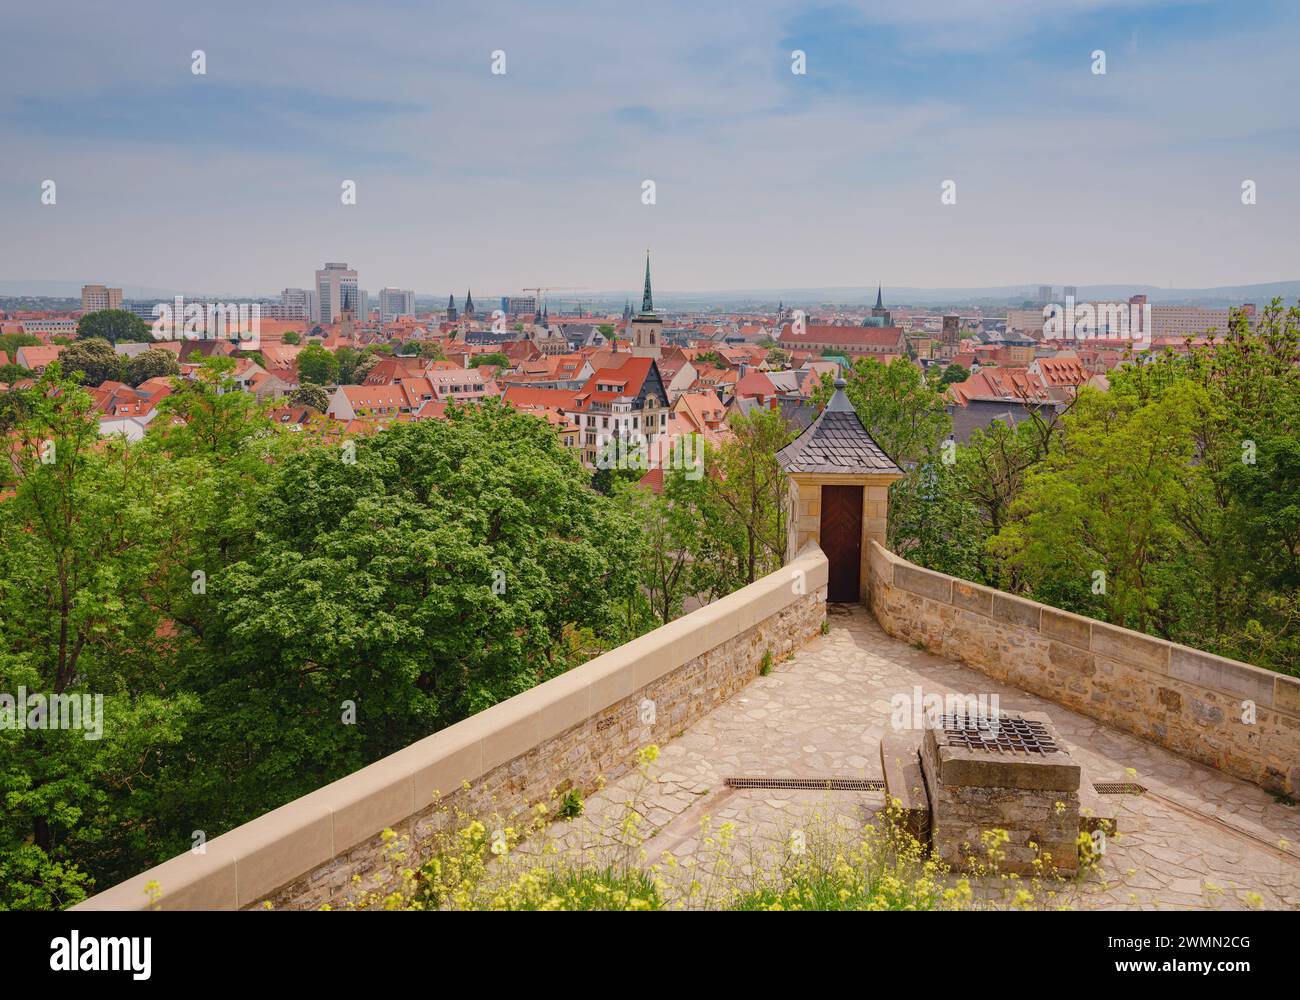 Les murs de la forteresse d'Erfurt qui protégeaient la ville ont été préservés sur la colline. Marcher le long des murs offre une vue imprenable sur les anciens quartiers d'Erfurt. Banque D'Images